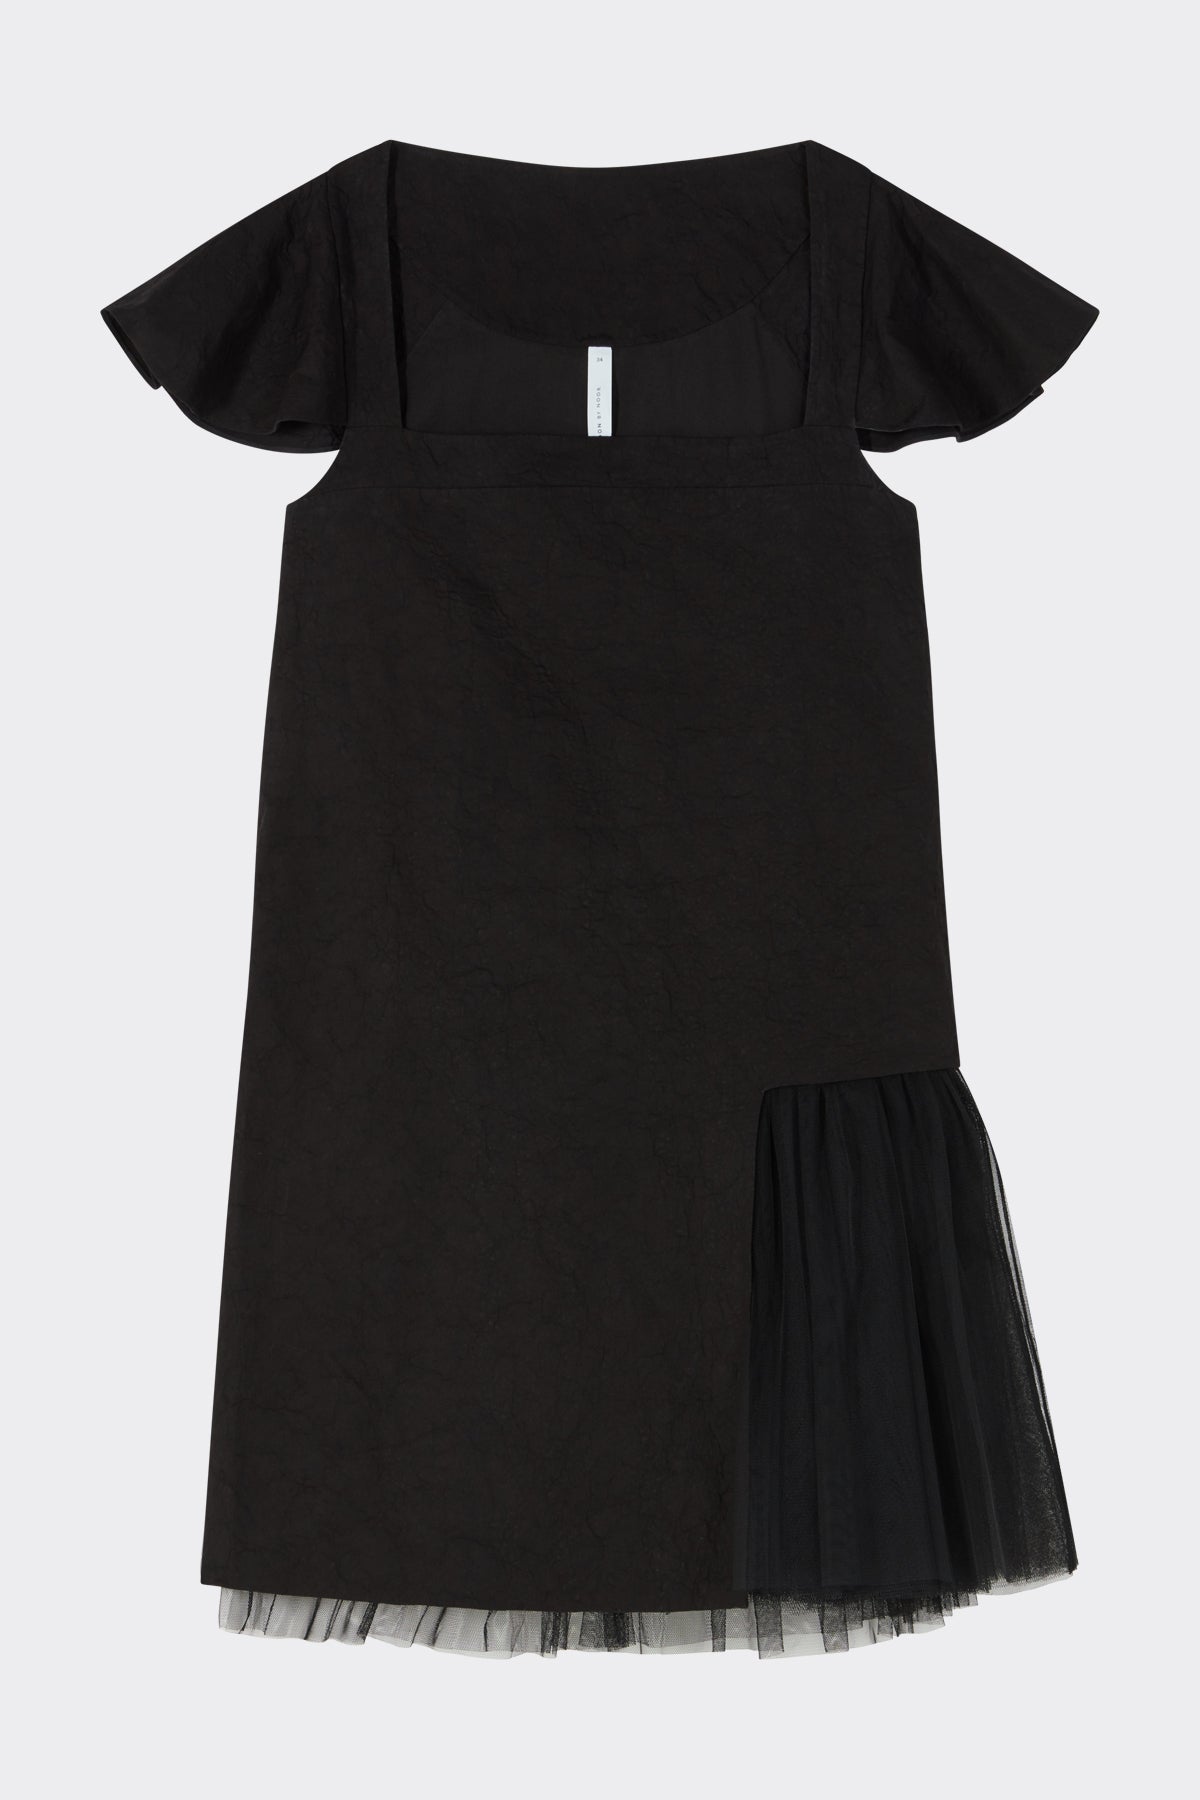 Suranne Dress in Black| Noon by Noor